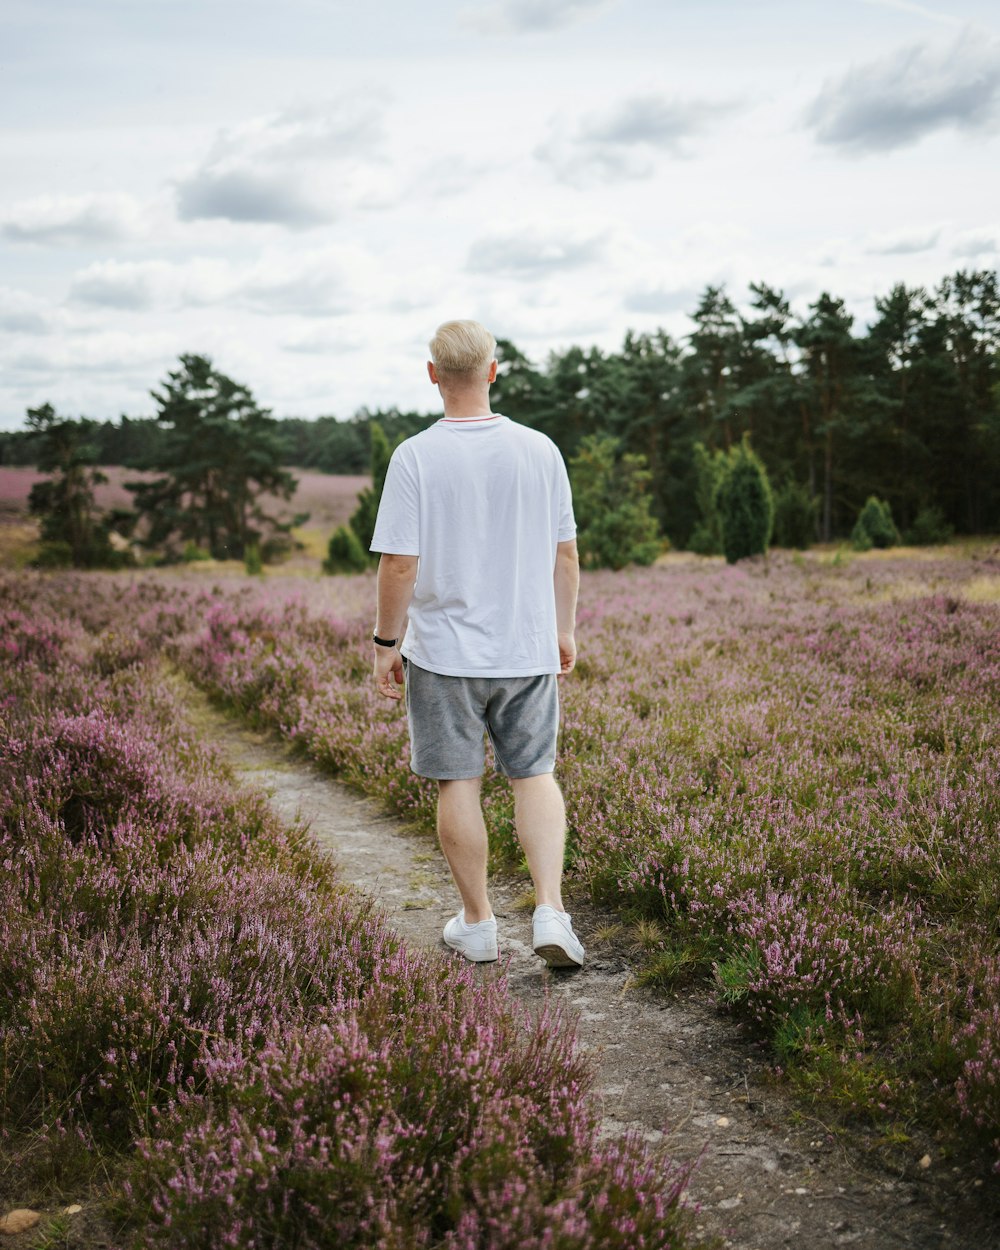 a man walking through a field of purple flowers